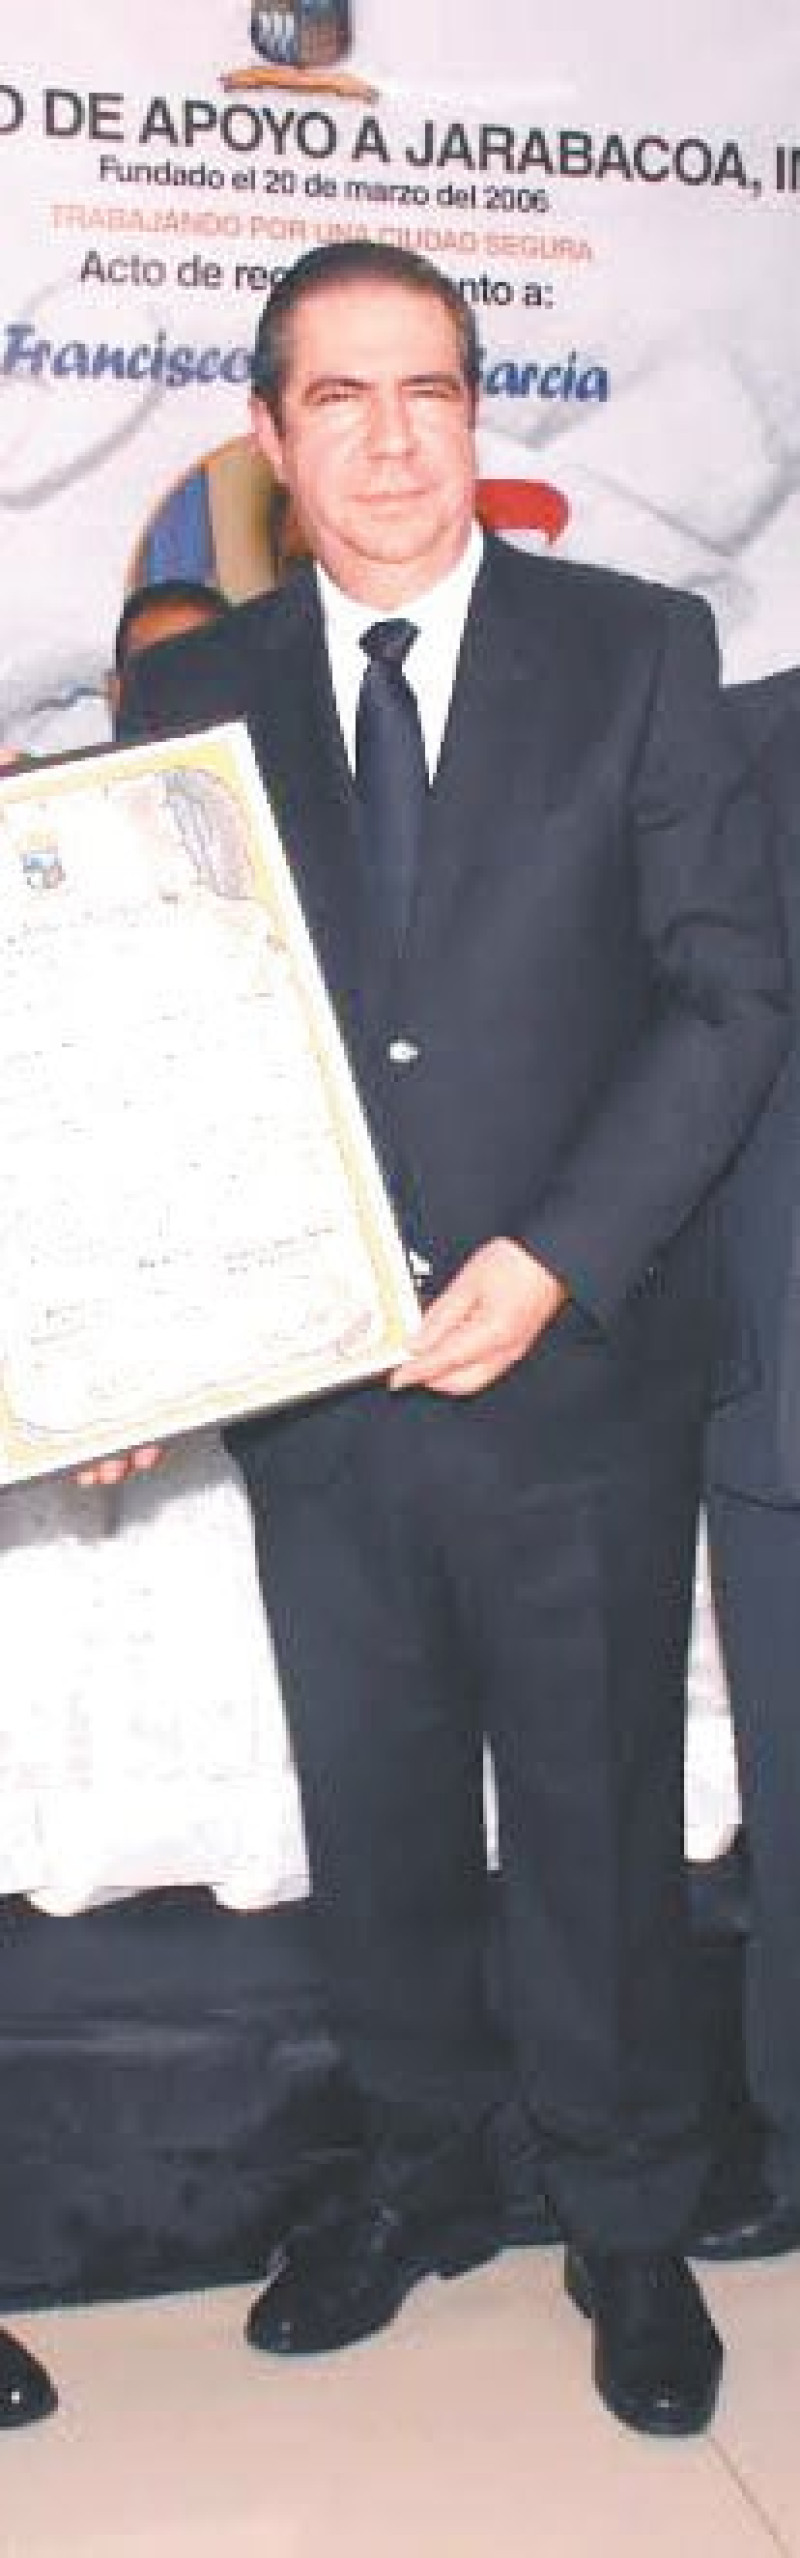 Francisco Javier García. Ministro de Turismo.